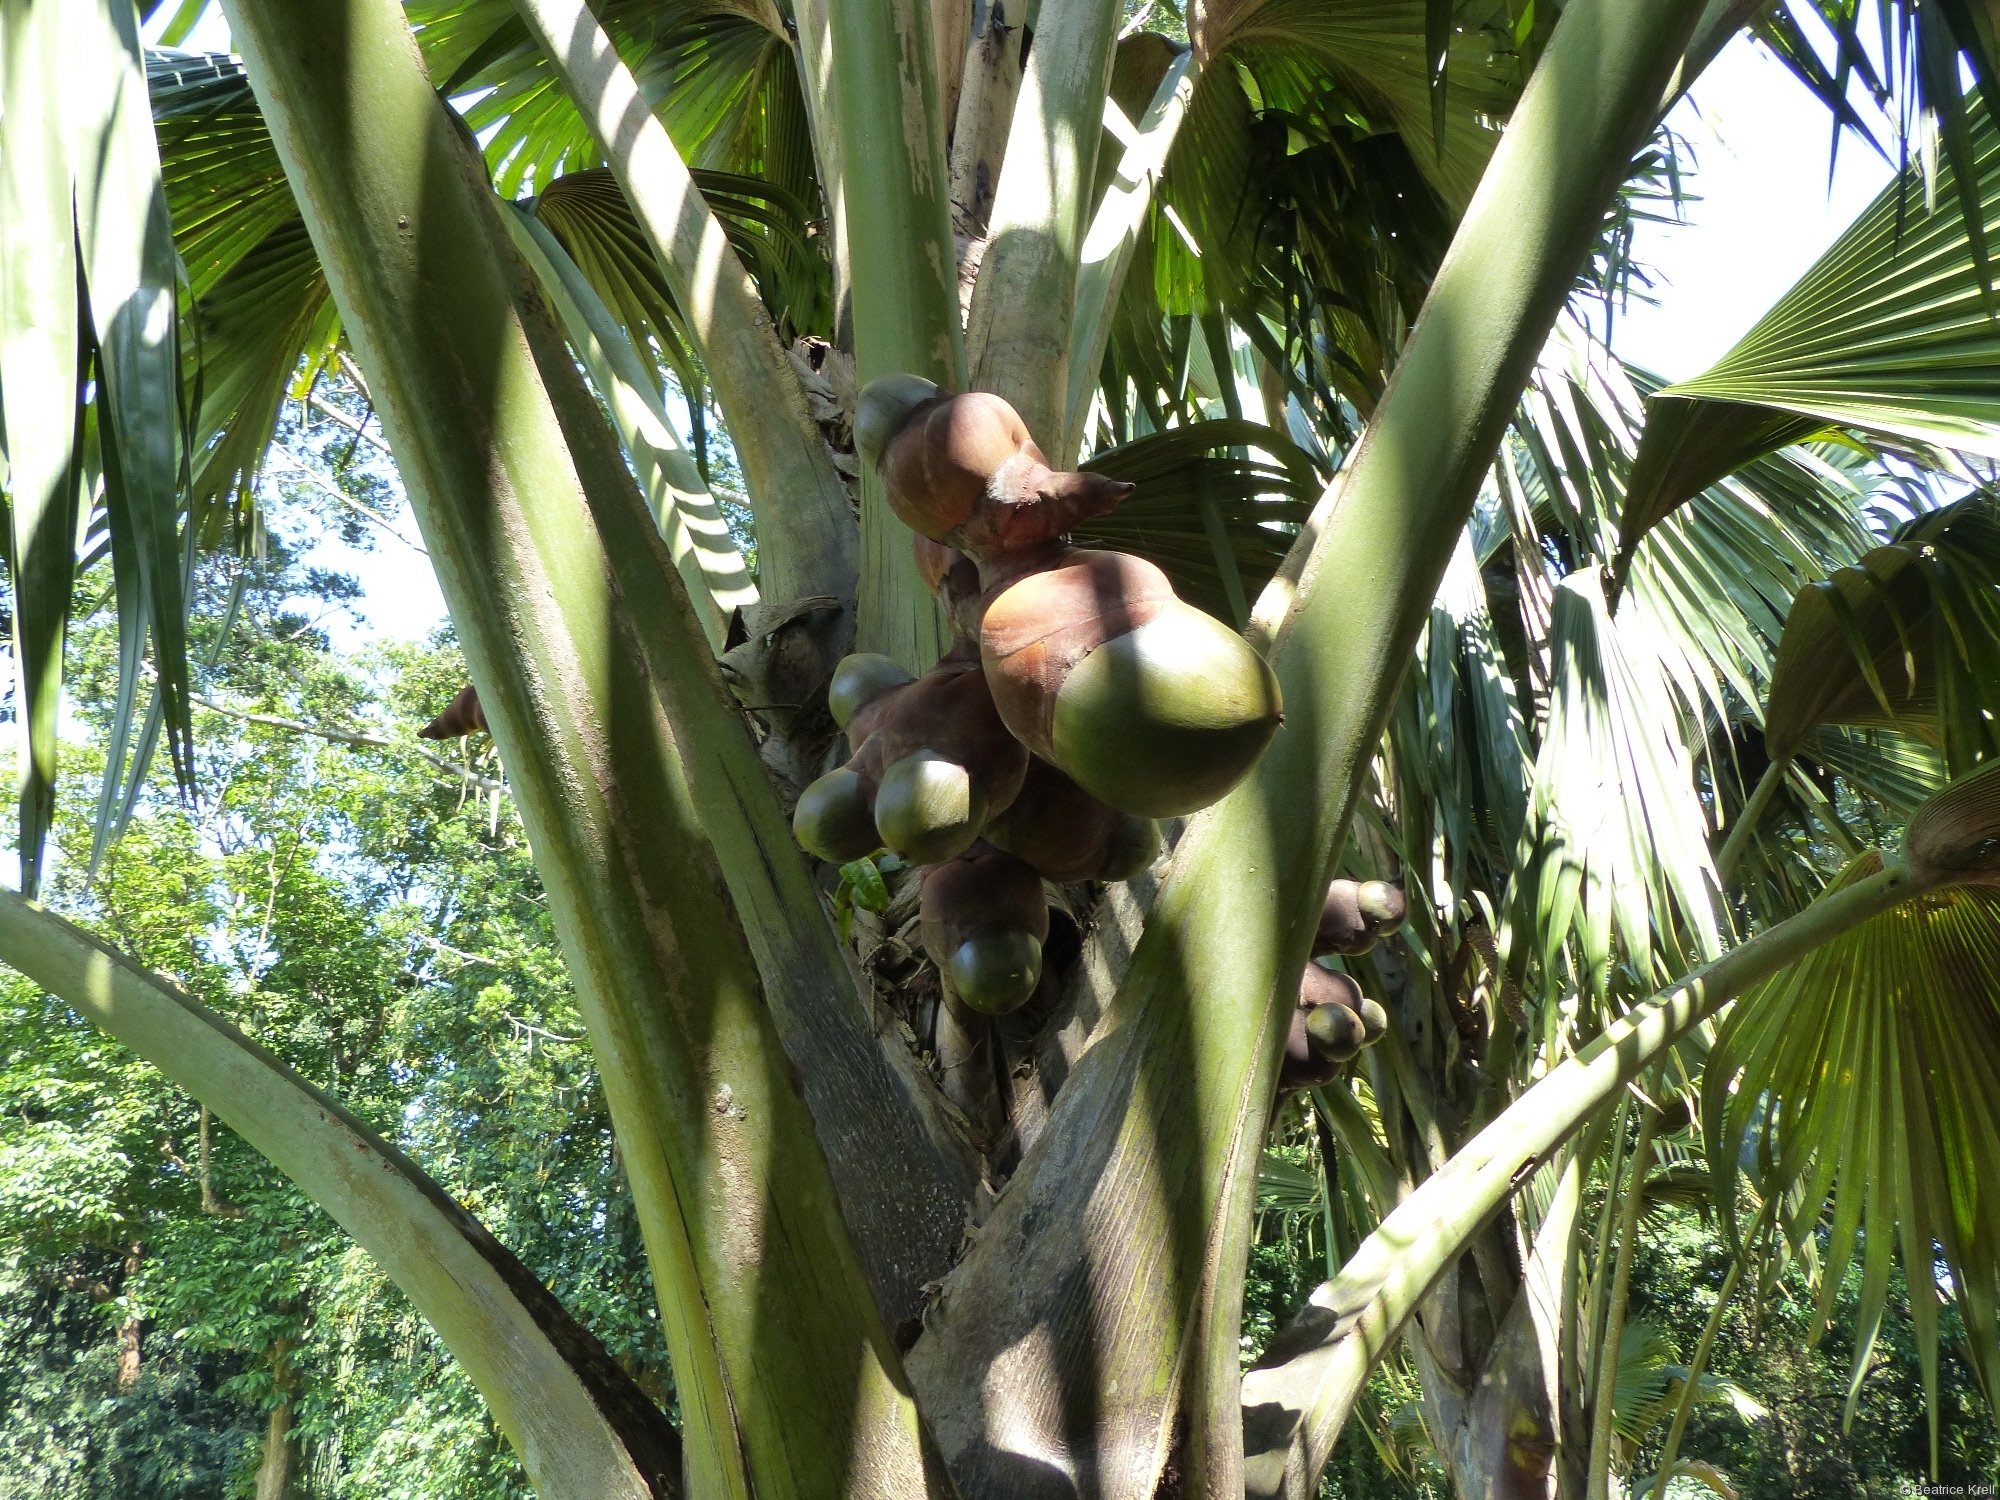 Die Doppelkokosnüsse im Botanischen Garten waren auch größer als gewöhnliche Kokosnüsse.